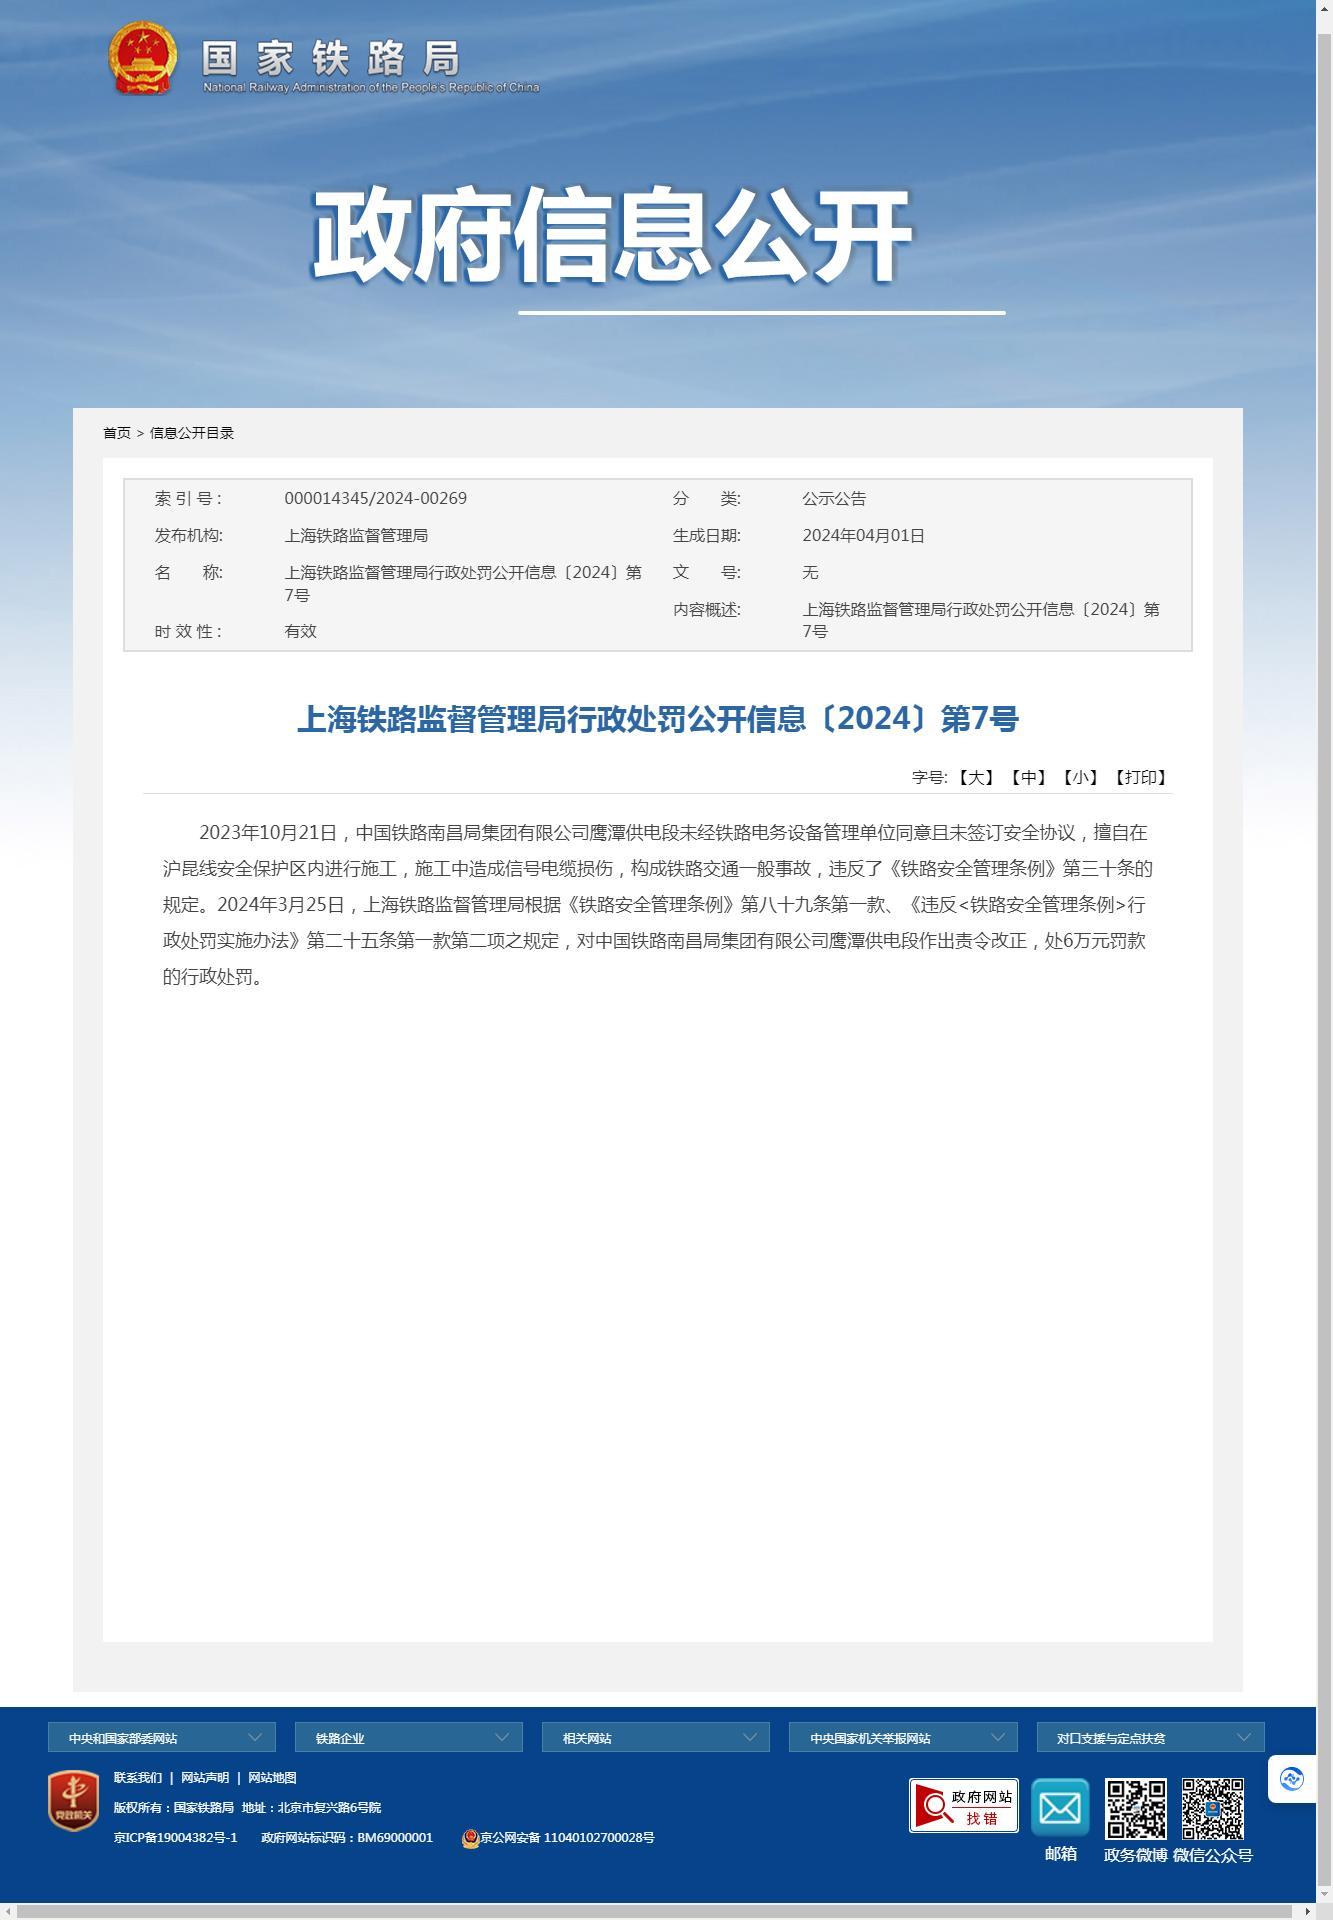 中国铁路南昌局集团有限公司鹰潭供电段因未经同意擅自施工导致一般事故发生被罚